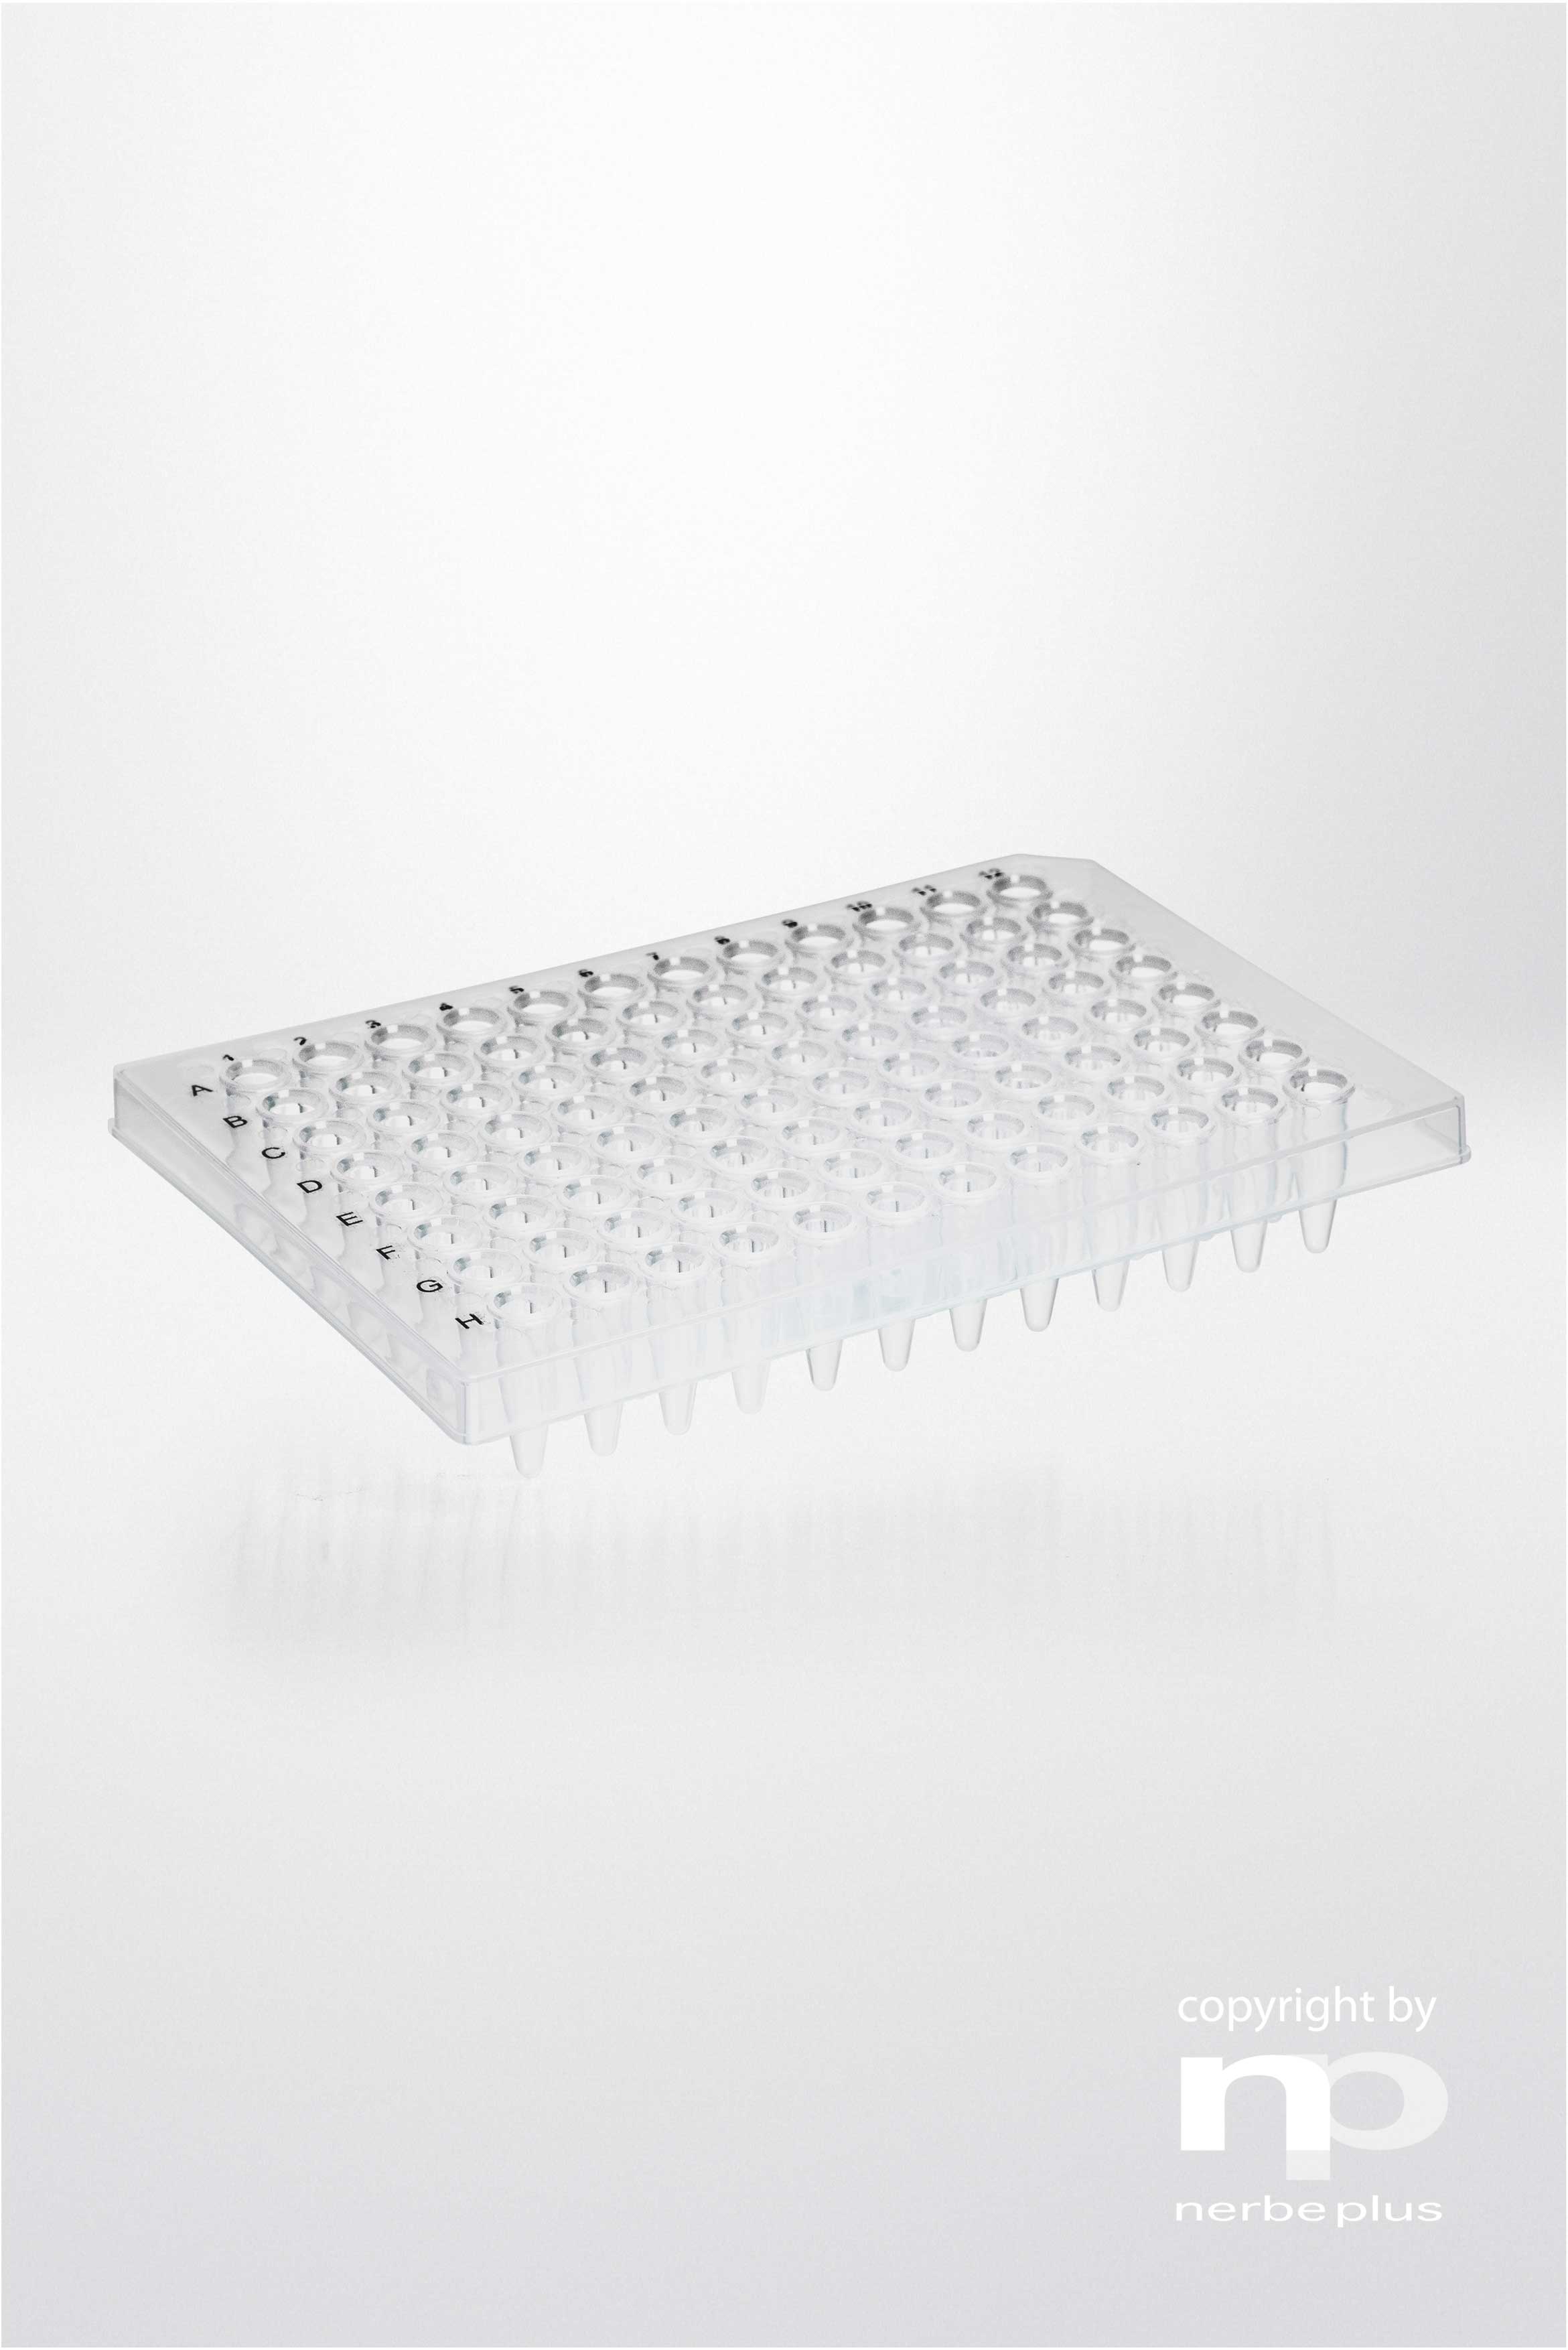 Placas para PCR. NERBE-PLUS. Capacidad: 96x0,2 ml. Tipo: Semi faldón. Resist. centrif (g): 6000. Color: Transparente. Esterilidad: PCR Ready.